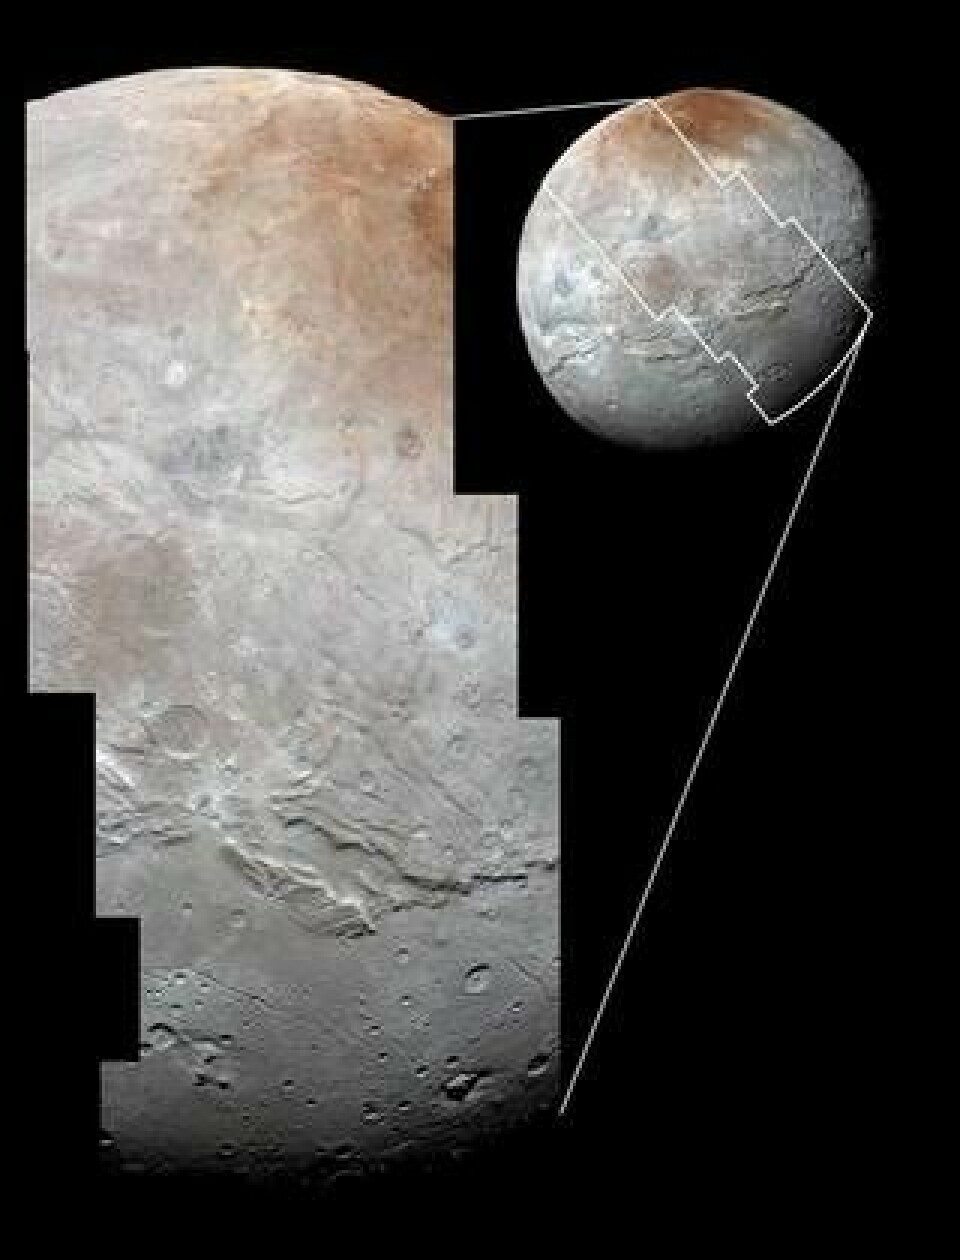 Högupplösta bilder av Charon togs av teleskopkameran Lorri ombord på rymdsonden och kombinerades med förstärkta färger från spektrometern Ralph. Bilden visar Charons hela diameter om 1 214 kilometer och återger 0,8 kilometer stora kännetecken. Foto: NASA/JHUAPL/SwRI